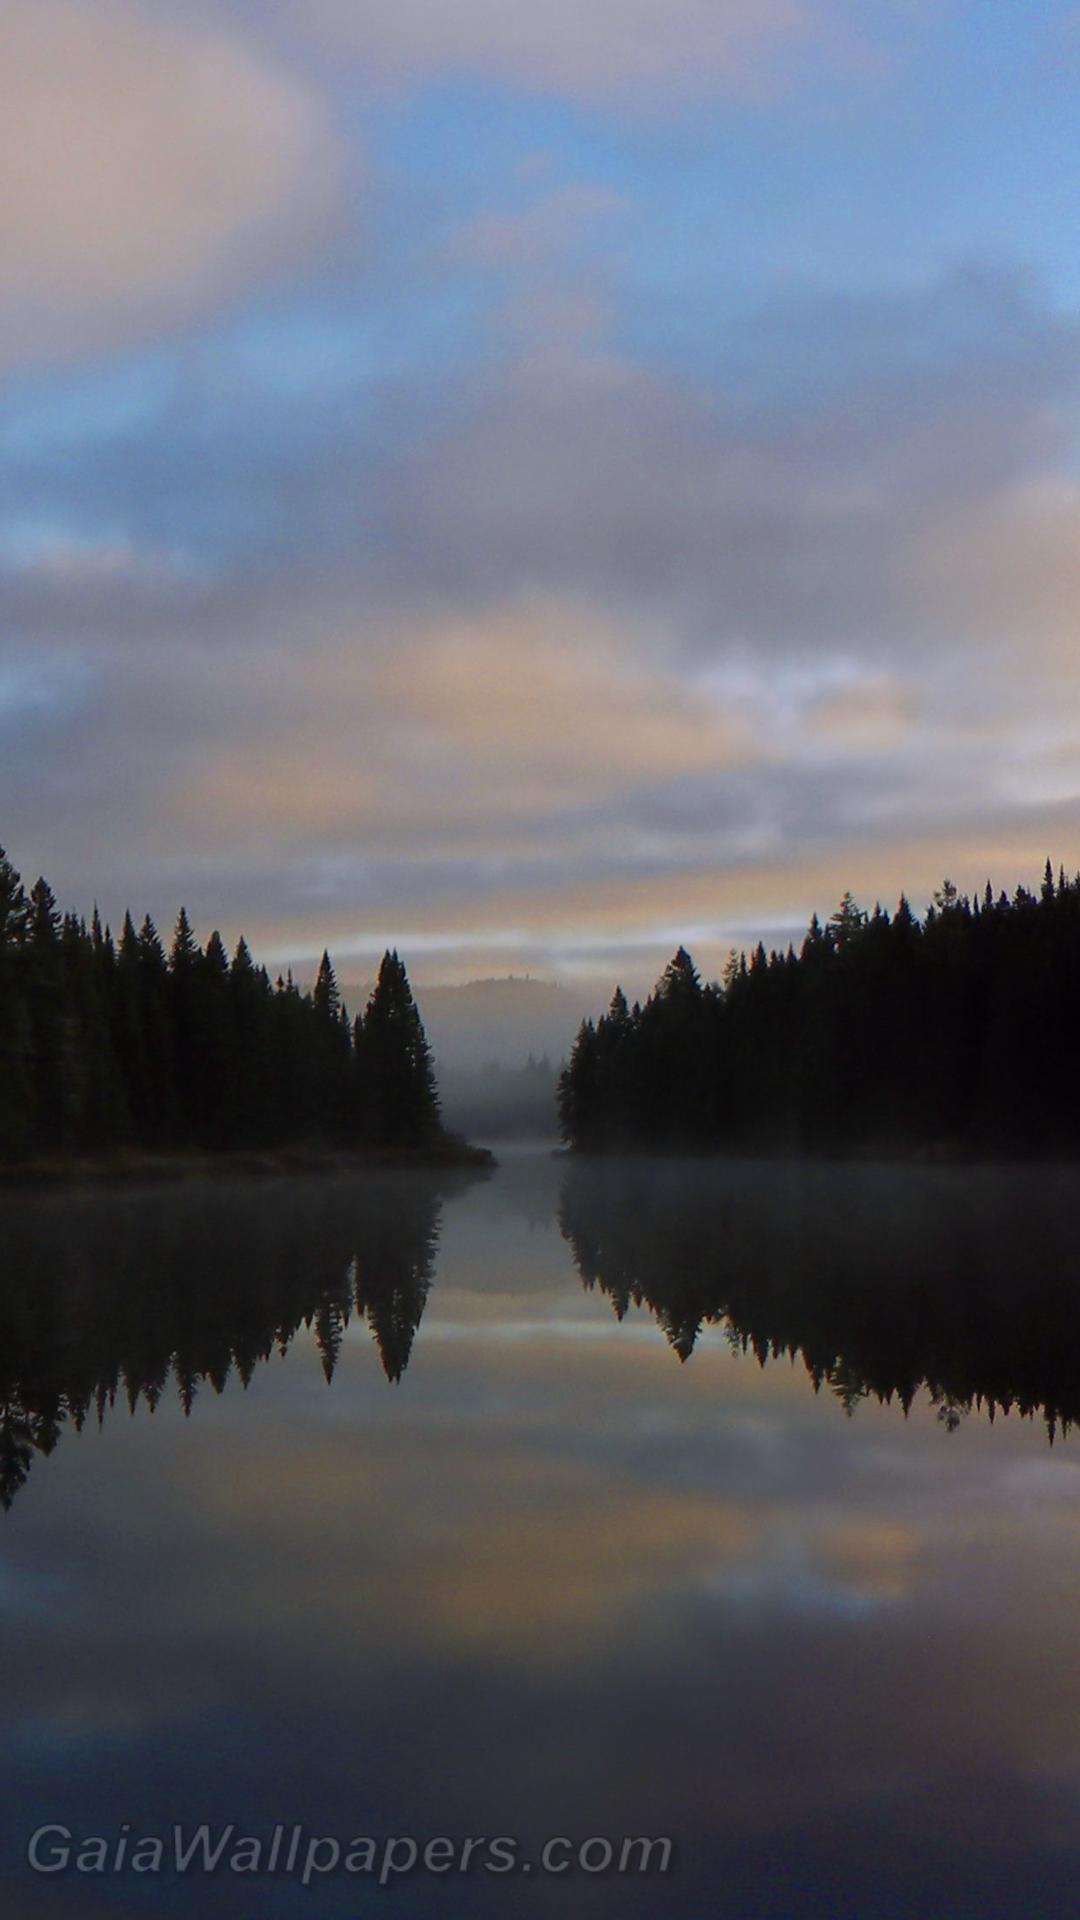 Lever du soleil dans la forêt se refletant sur un lac calme - Fonds d'écran gratuits